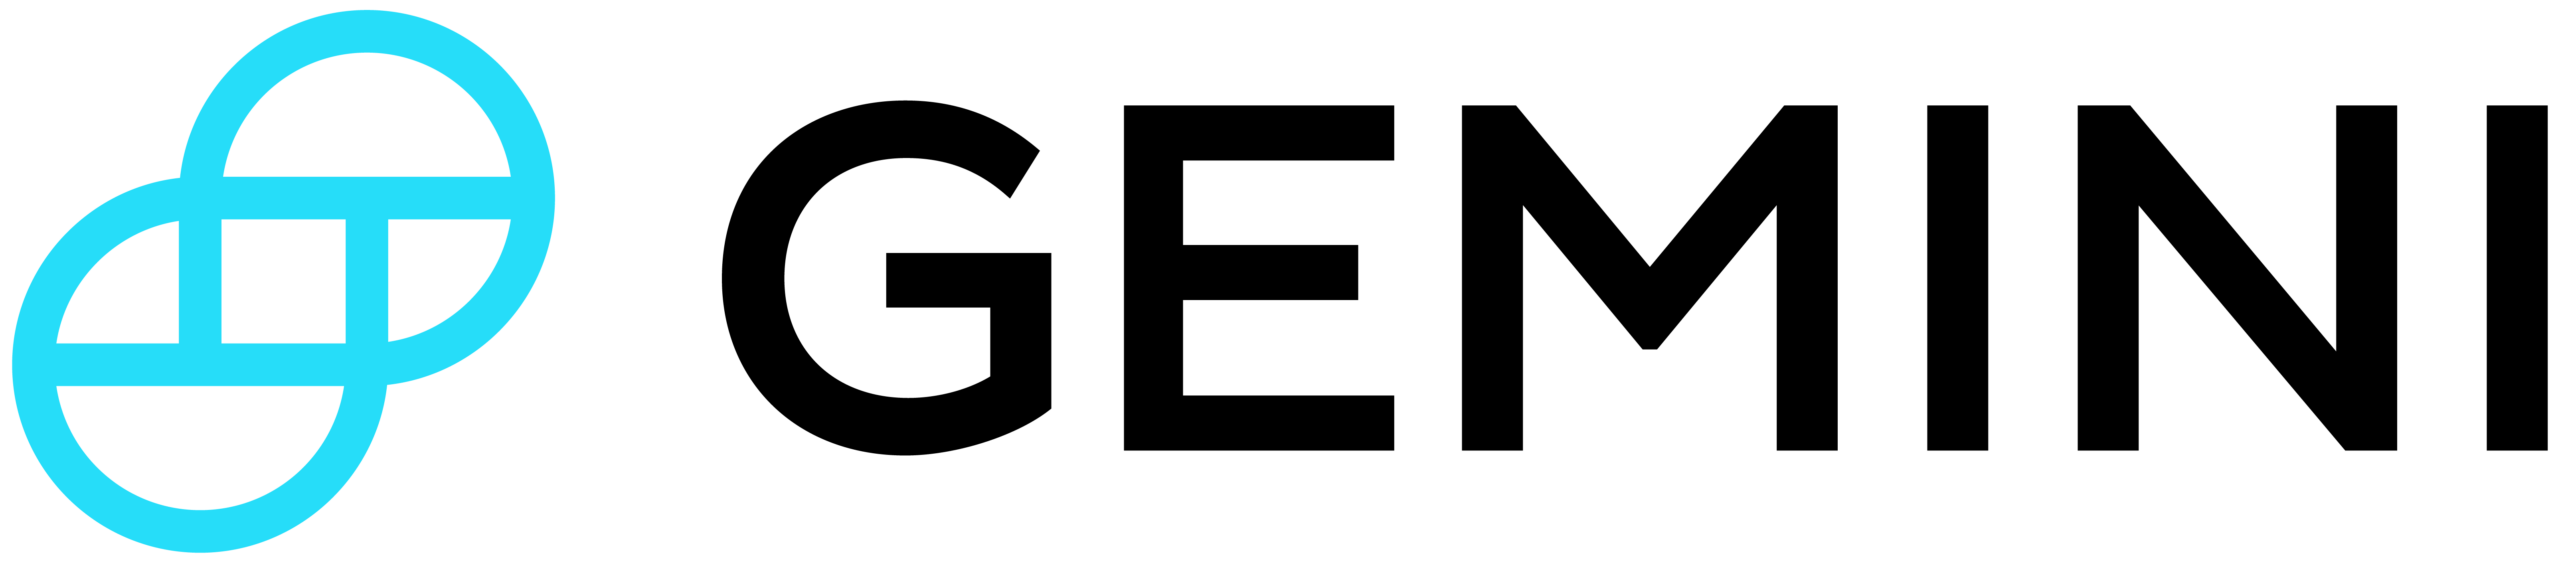 Gemini Cüzdan Logosu